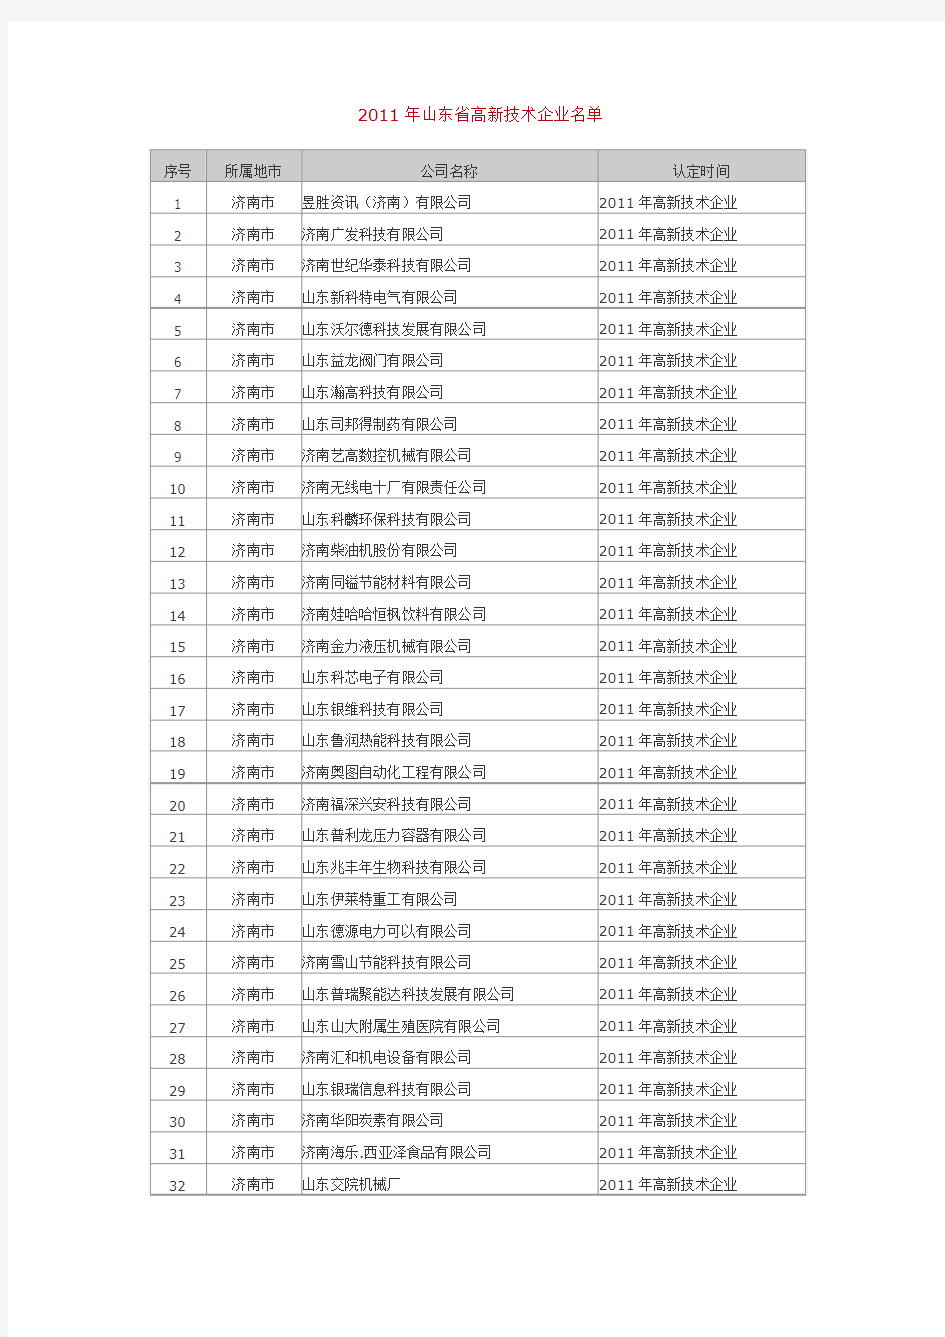 2011年山东省高新技术企业名单